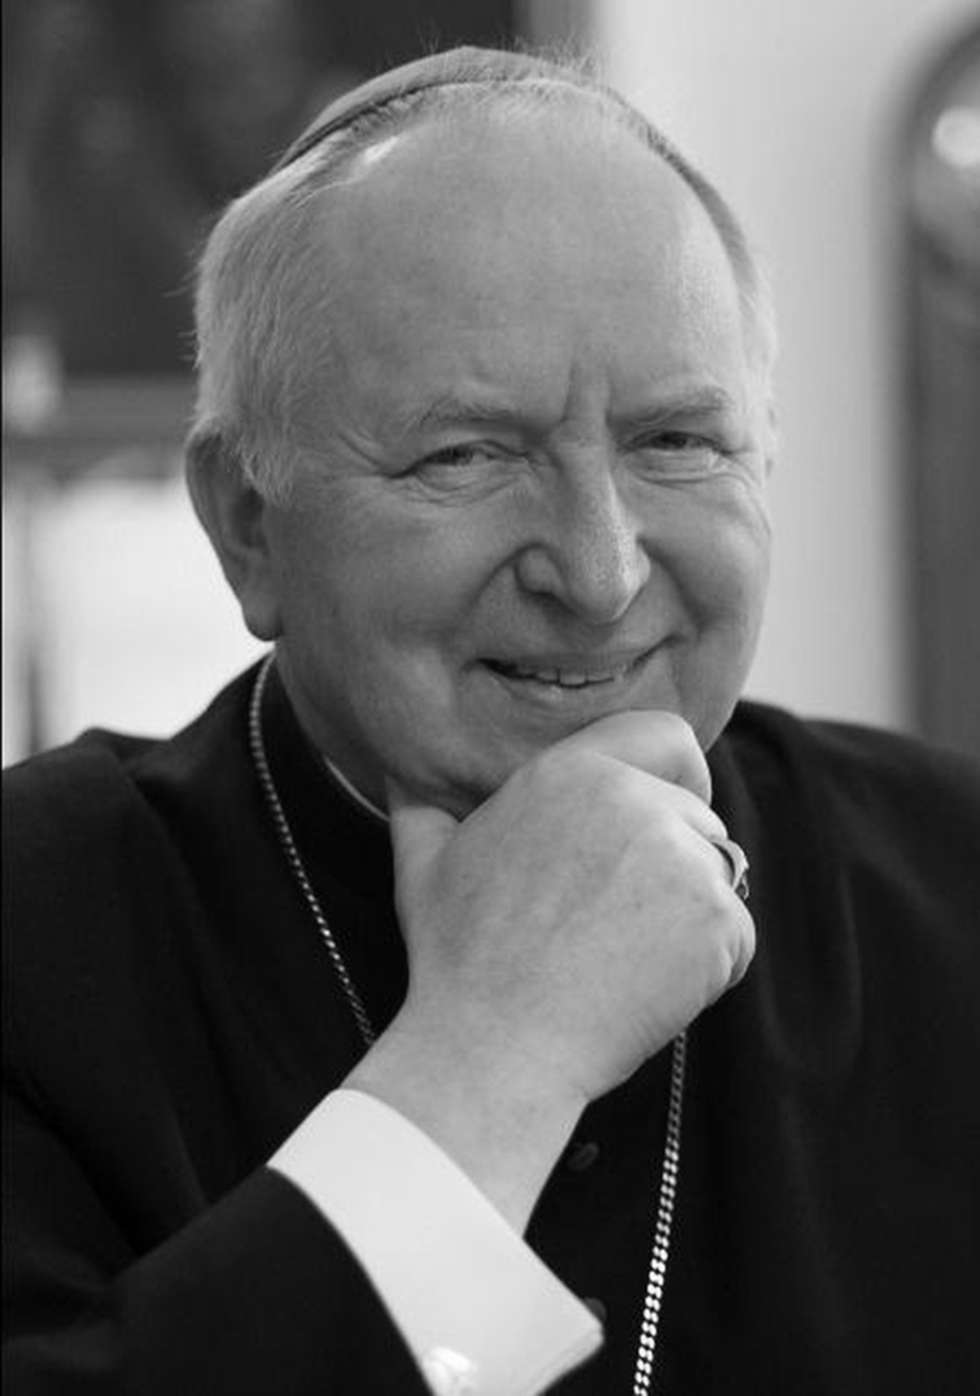  <p><strong>2017 -&nbsp;wrzesień</strong></p>
<p><strong>Ks. bp. Kazimierz Ryczan</strong>&nbsp;</p>
<p>Biskup senior diecezji kieleckiej, wieloletni profesor teologii pastoralnej KUL. Miał 78 lat</p>
<p>Kazimierz Ryczan urodził 10 lutego 1939 w Żurawicy k. Przemyśla. W latach 1956-63 studiował w Wyższym Seminarium Duchownym w Przemyślu. Od 1966 roku kontynuował specjalistyczne studia teologiczne na KUL. W 1976 r. rozpoczął pracę naukową na lubelskiej uczelni, a dwa lata p&oacute;źniej obronił doktorat. W 1992 r. uzyskał stopień doktora habilitowanego i został powołany na Kierownika Katedry Socjologii Religii w Instytucie Teologii Pastoralnej KUL. 11 września 1993 roku przyjął sakrę biskupią i objął posługę ordynariusza diecezji kieleckiej, nie rezygnując z pracy naukowo-dydaktycznej w KUL. Do roku 2011 był kierownikiem Katedry Socjologii Religii, a regularne wykłady prowadził do 2013 r.</p>
<p>W czasie pracy na KUL był m.in. sekretarzem, a potem I wiceprzewodniczącym Komisji Uczelnianej &bdquo;Solidarności&rdquo; (1980-81), wicedyrektorem, a następnie dyrektorem Konwiktu księży student&oacute;w (1983-93). Był m.in. członkiem Rady Stałej Konferencji Episkopatu Polsk, Rady Naukowej, przewodniczącym Rady Gł&oacute;wnej Konferencji Episkopatu Polski do Spraw Społecznych Iustitia et Pax, a także Krajowym Duszpasterzem Ludzi Pracy. Wypromował 14 doktor&oacute;w.</p>